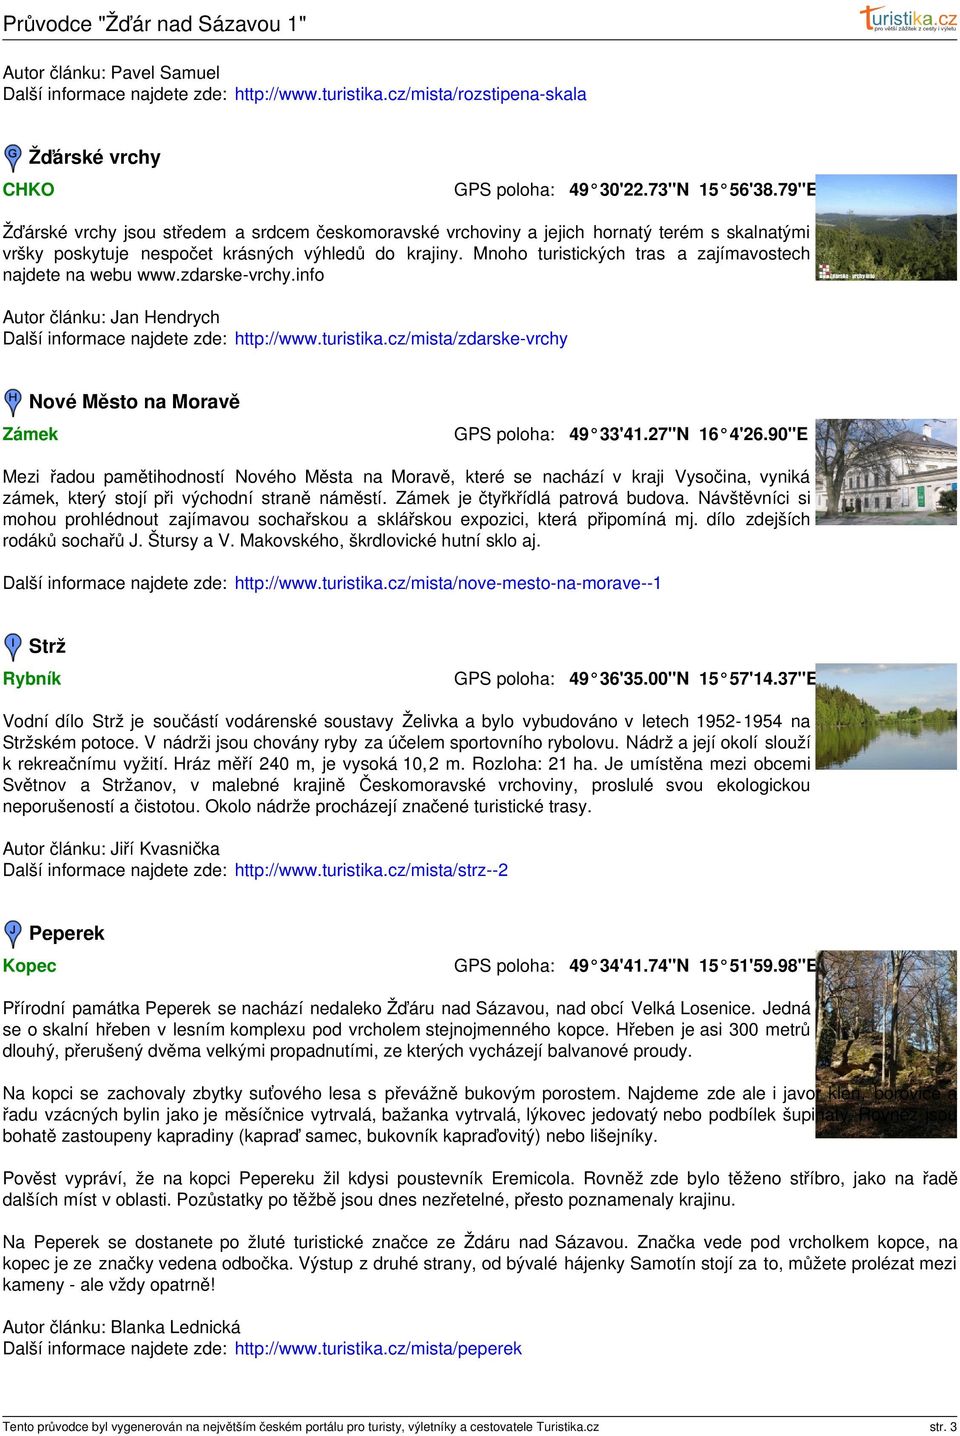 Mnoho turistických tras a zajímavostech najdete na webu www.zdarske-vrchy.info Autor článku: Jan Hendrych Další informace najdete zde: http://www.turistika.